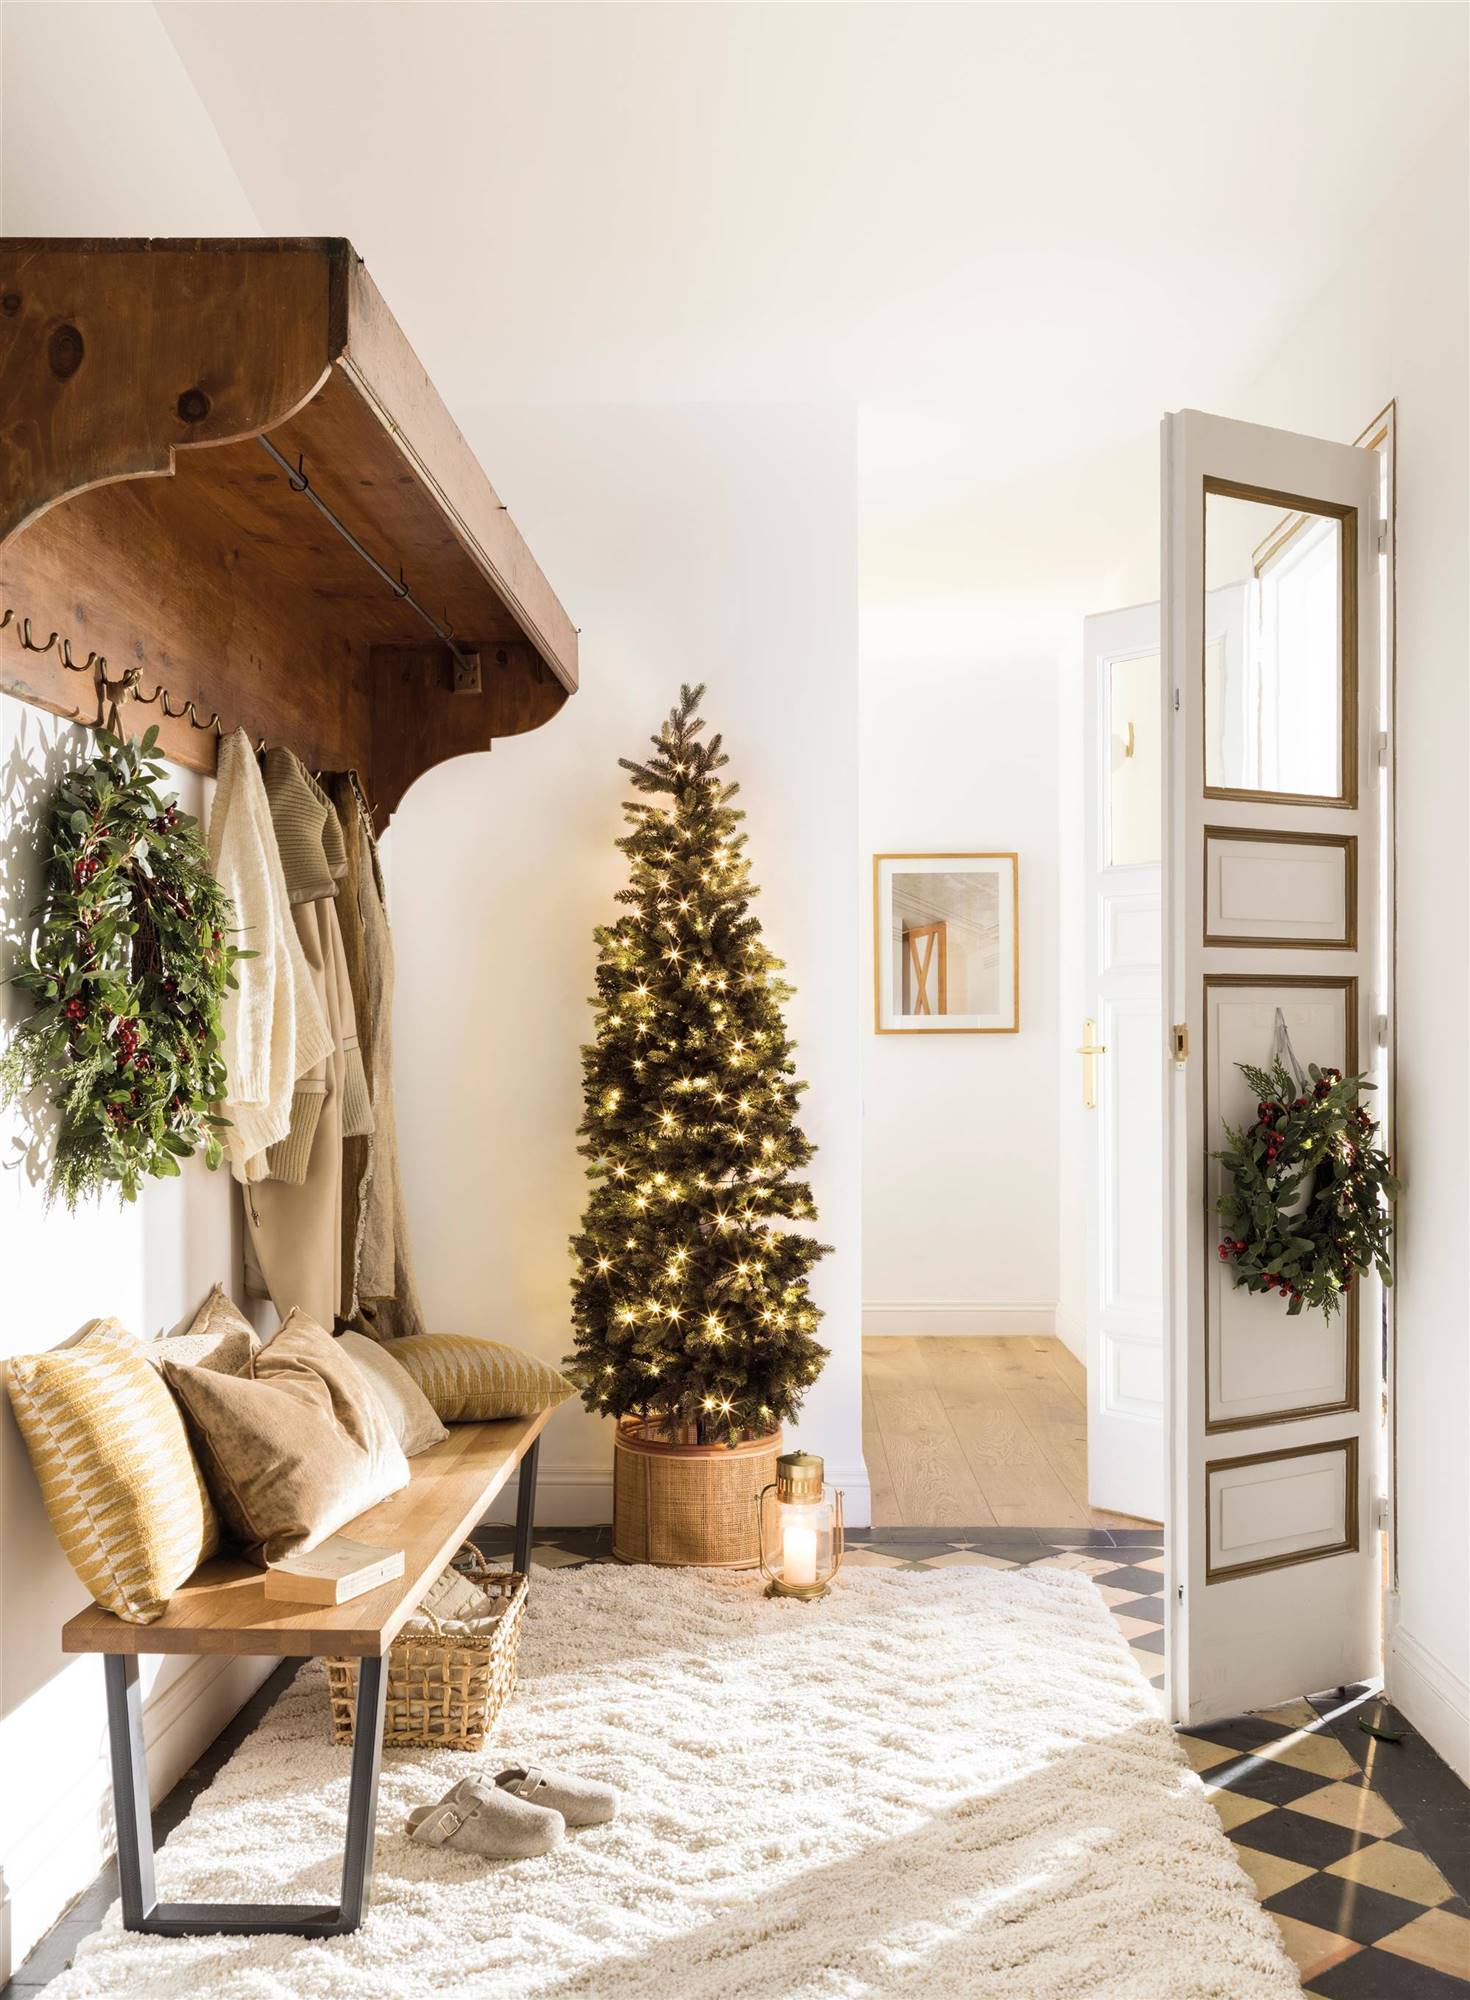 Recibidor con perchero de madera, banco zapatero, alfombra de pelo blanco y corona navideña en puerta de entrada 00515385